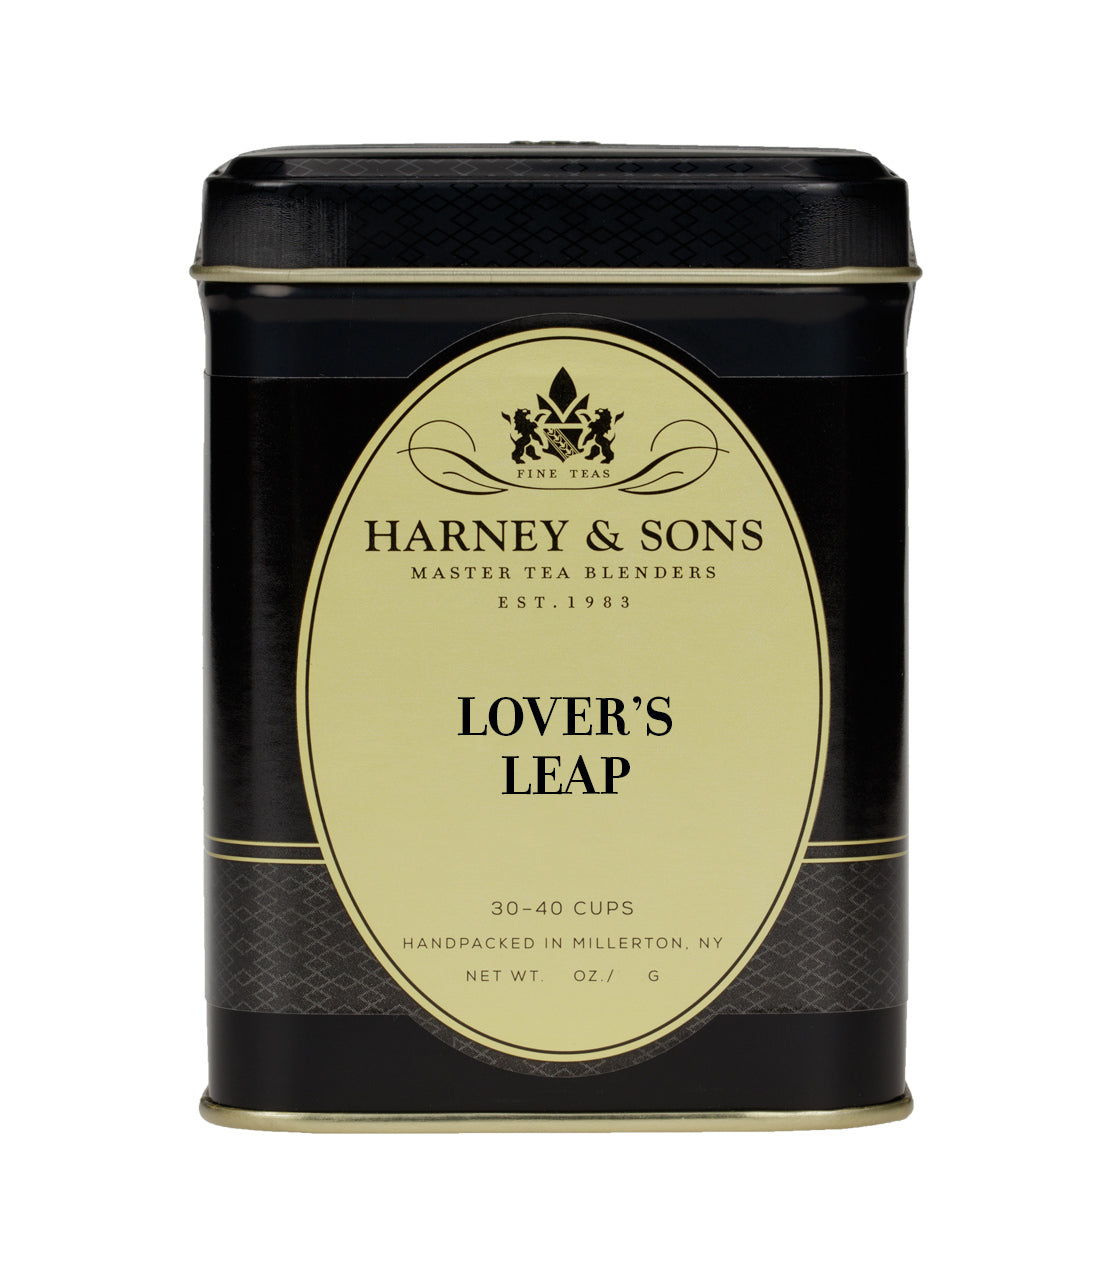 Lover's Leap - Loose 4 oz. Tin - Harney & Sons Fine Teas